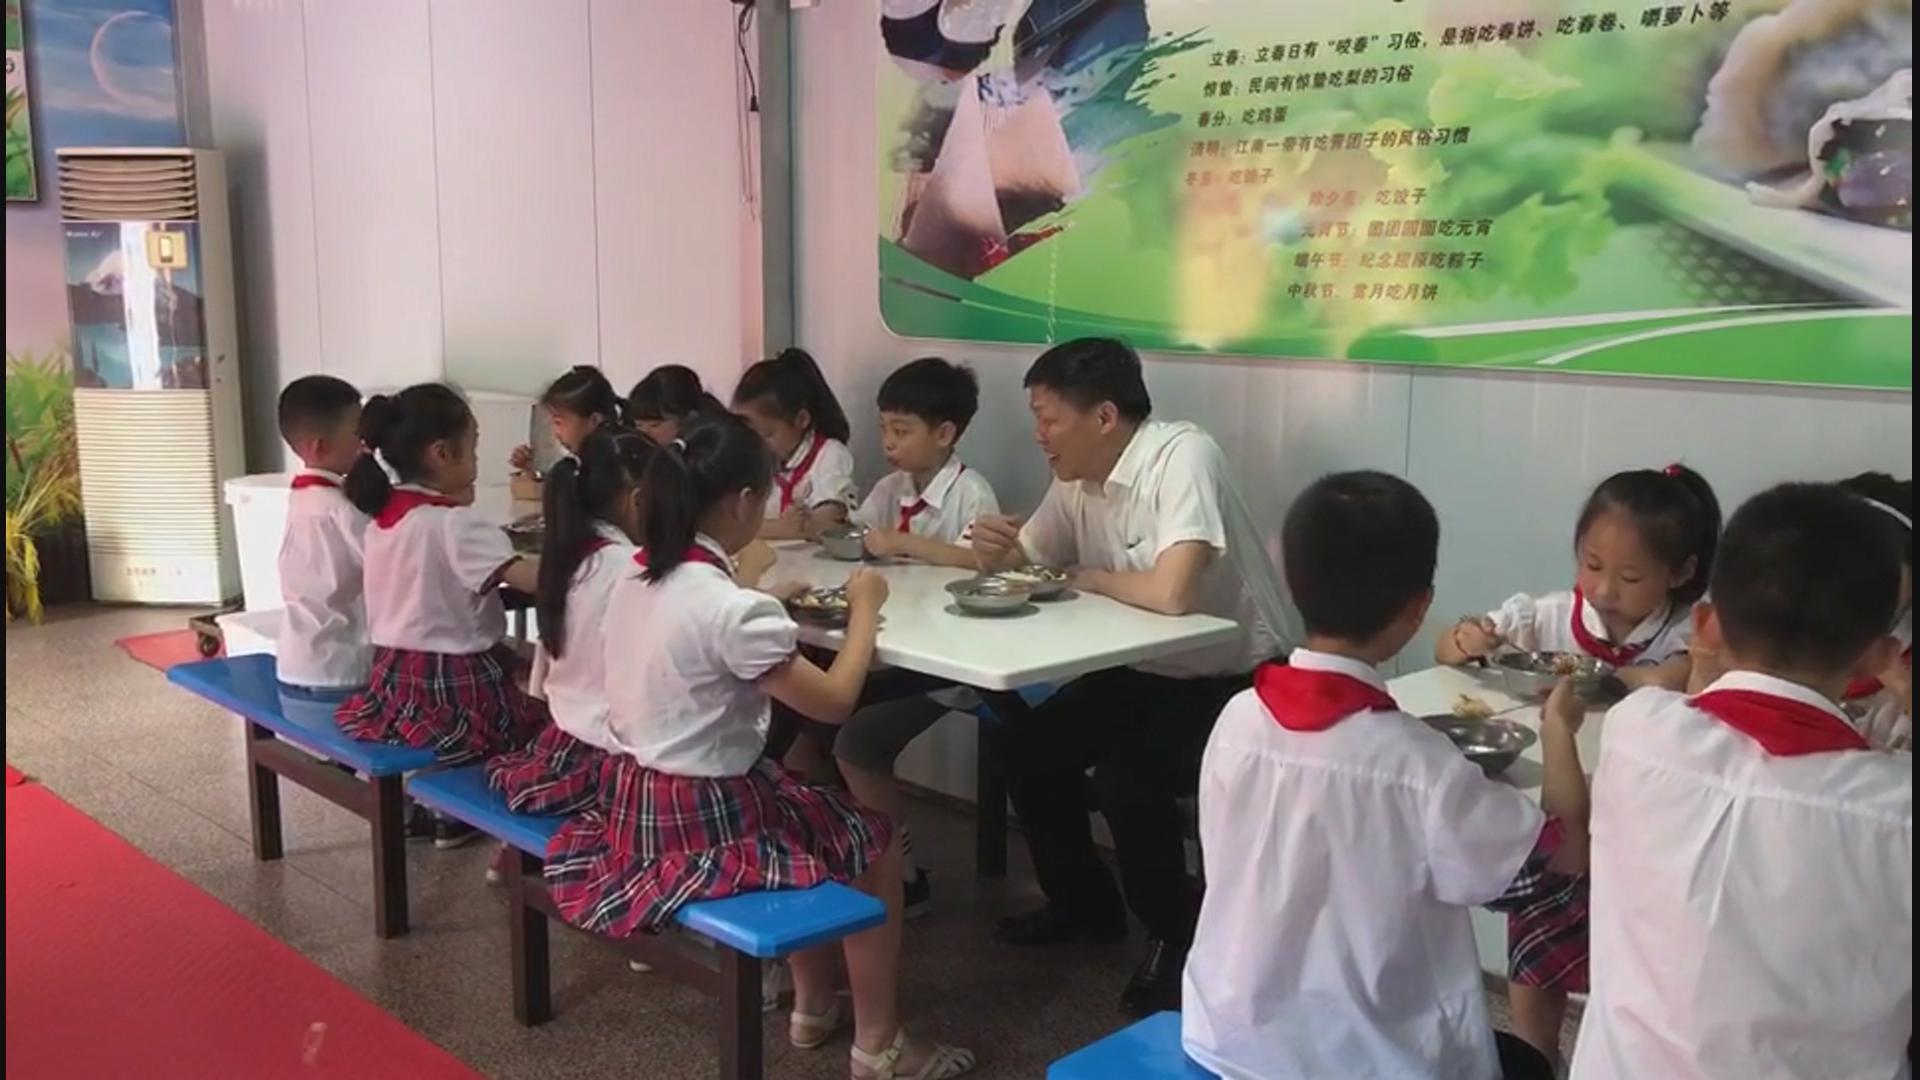 荆州区楚都中学的食堂内,工作人员正在摆放煮好的饭菜,工作人员告诉